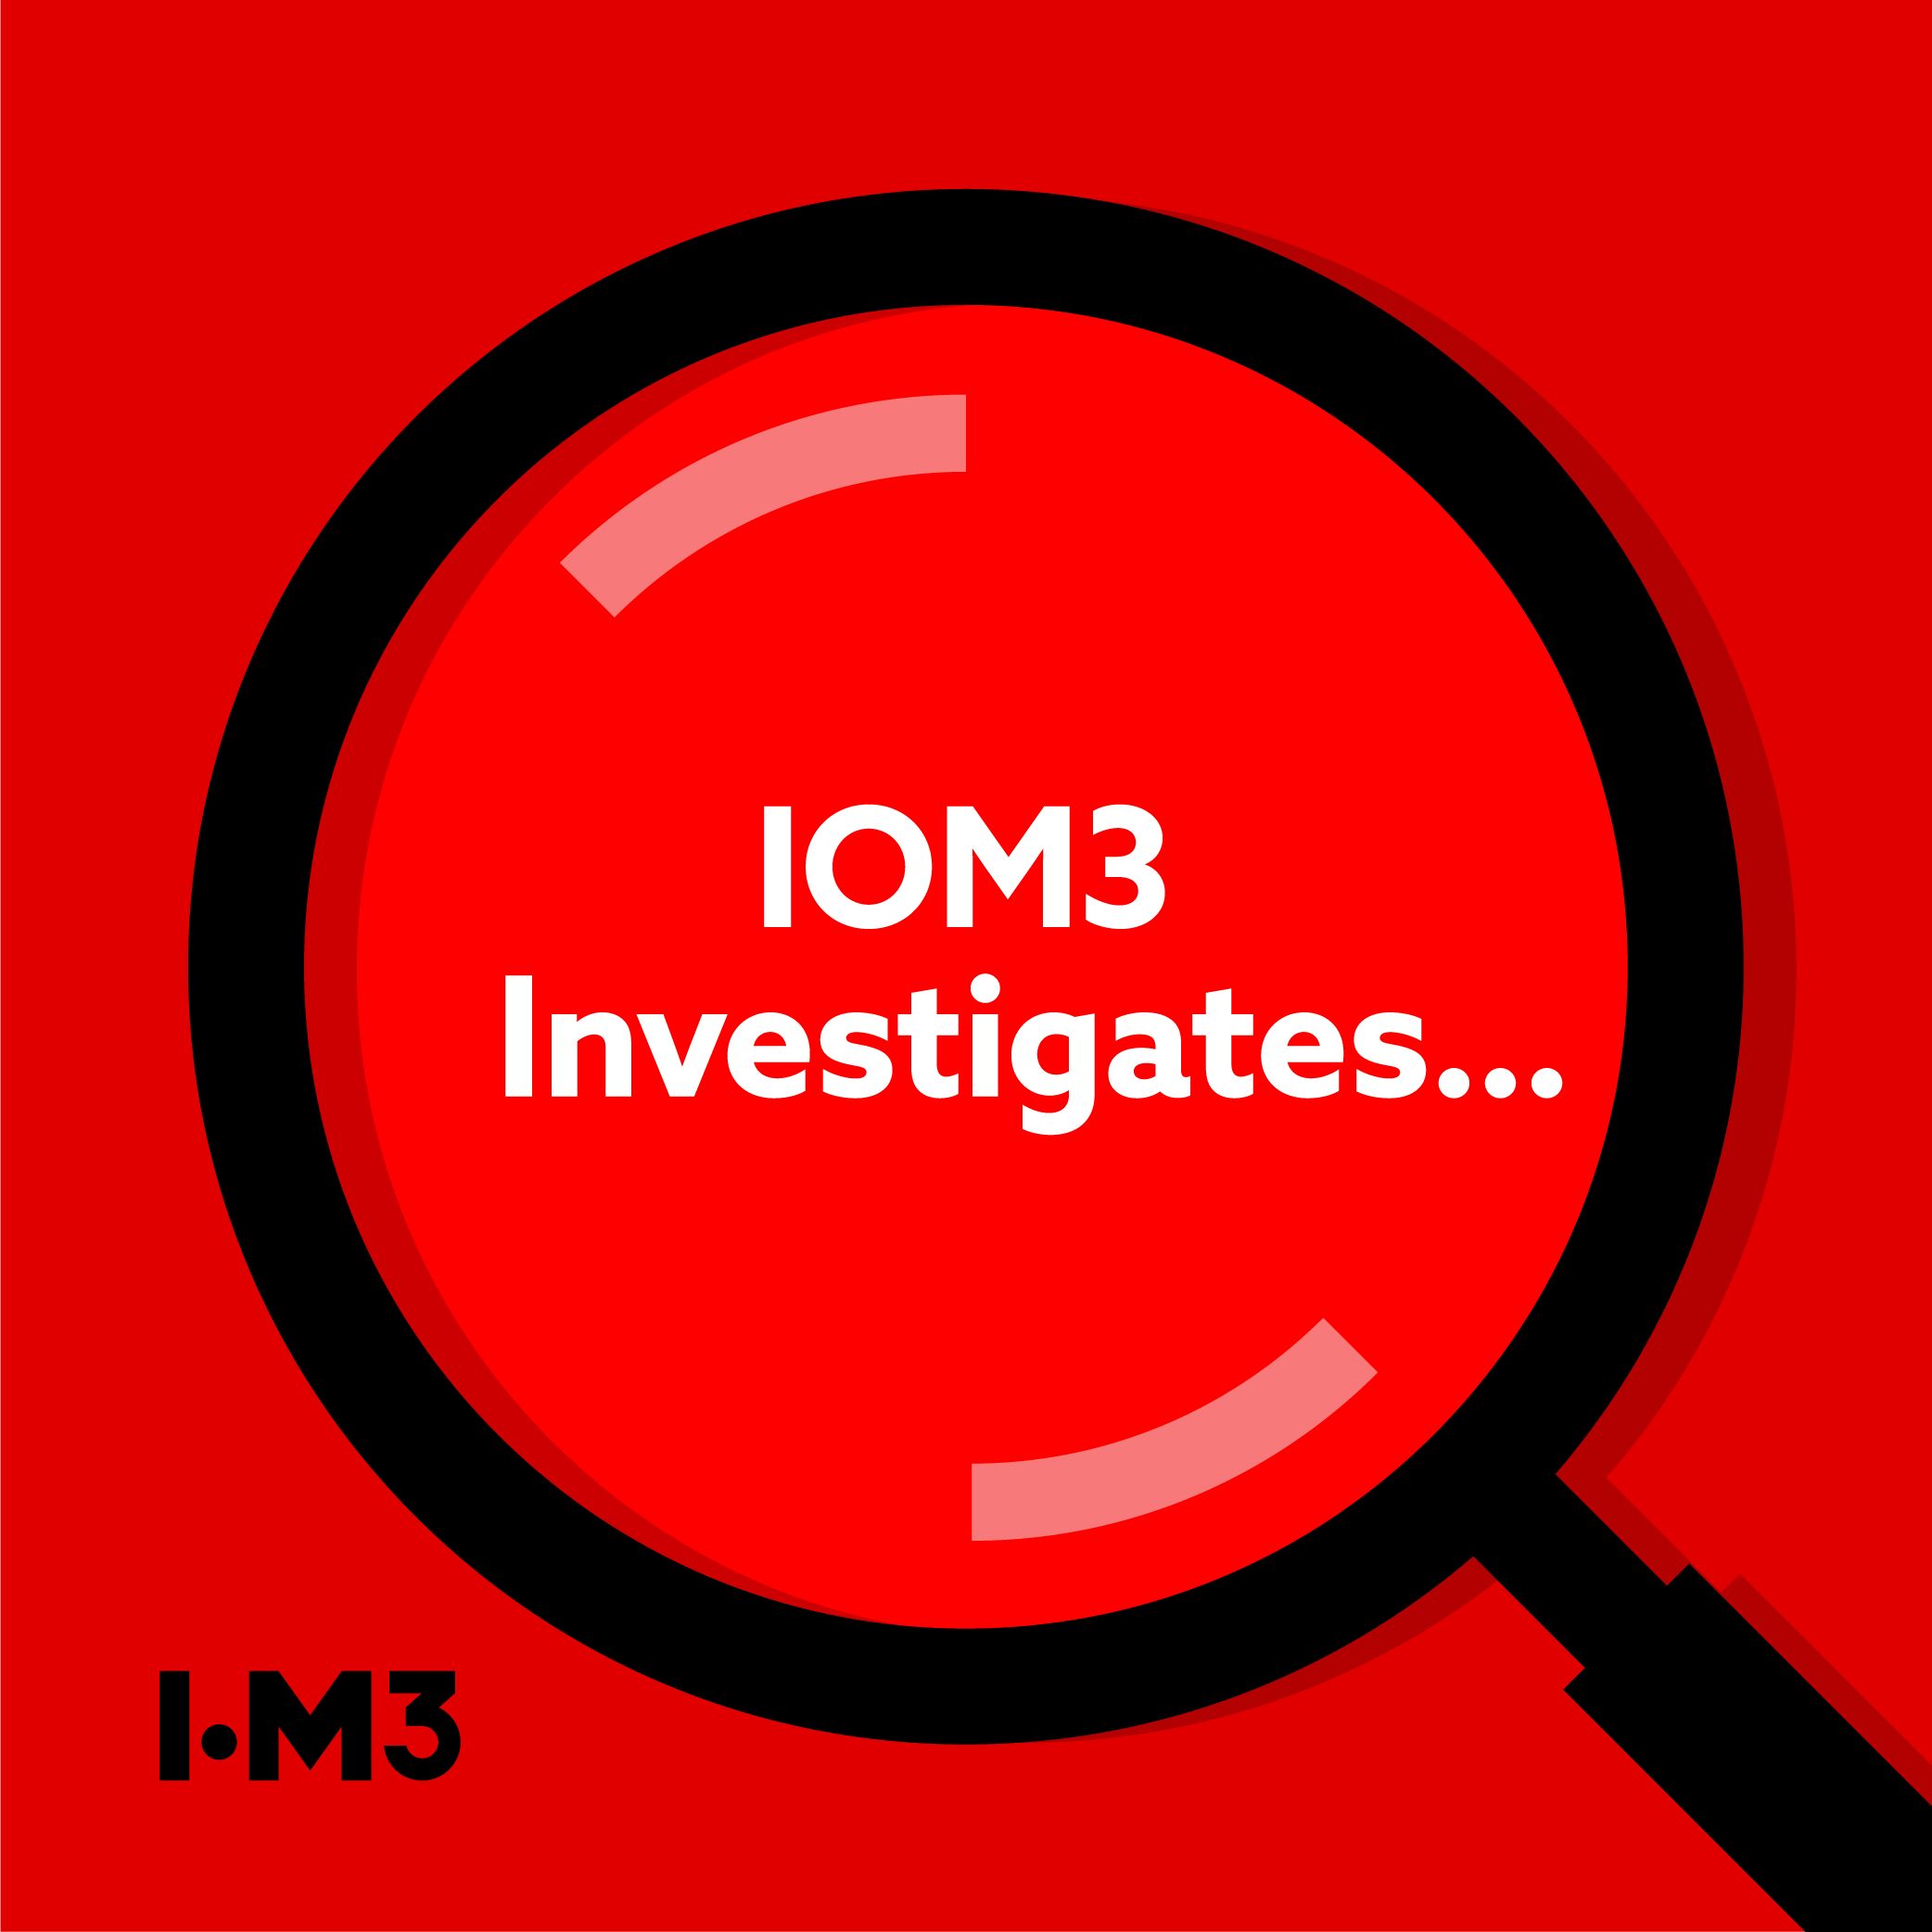 IOM3 Investigates